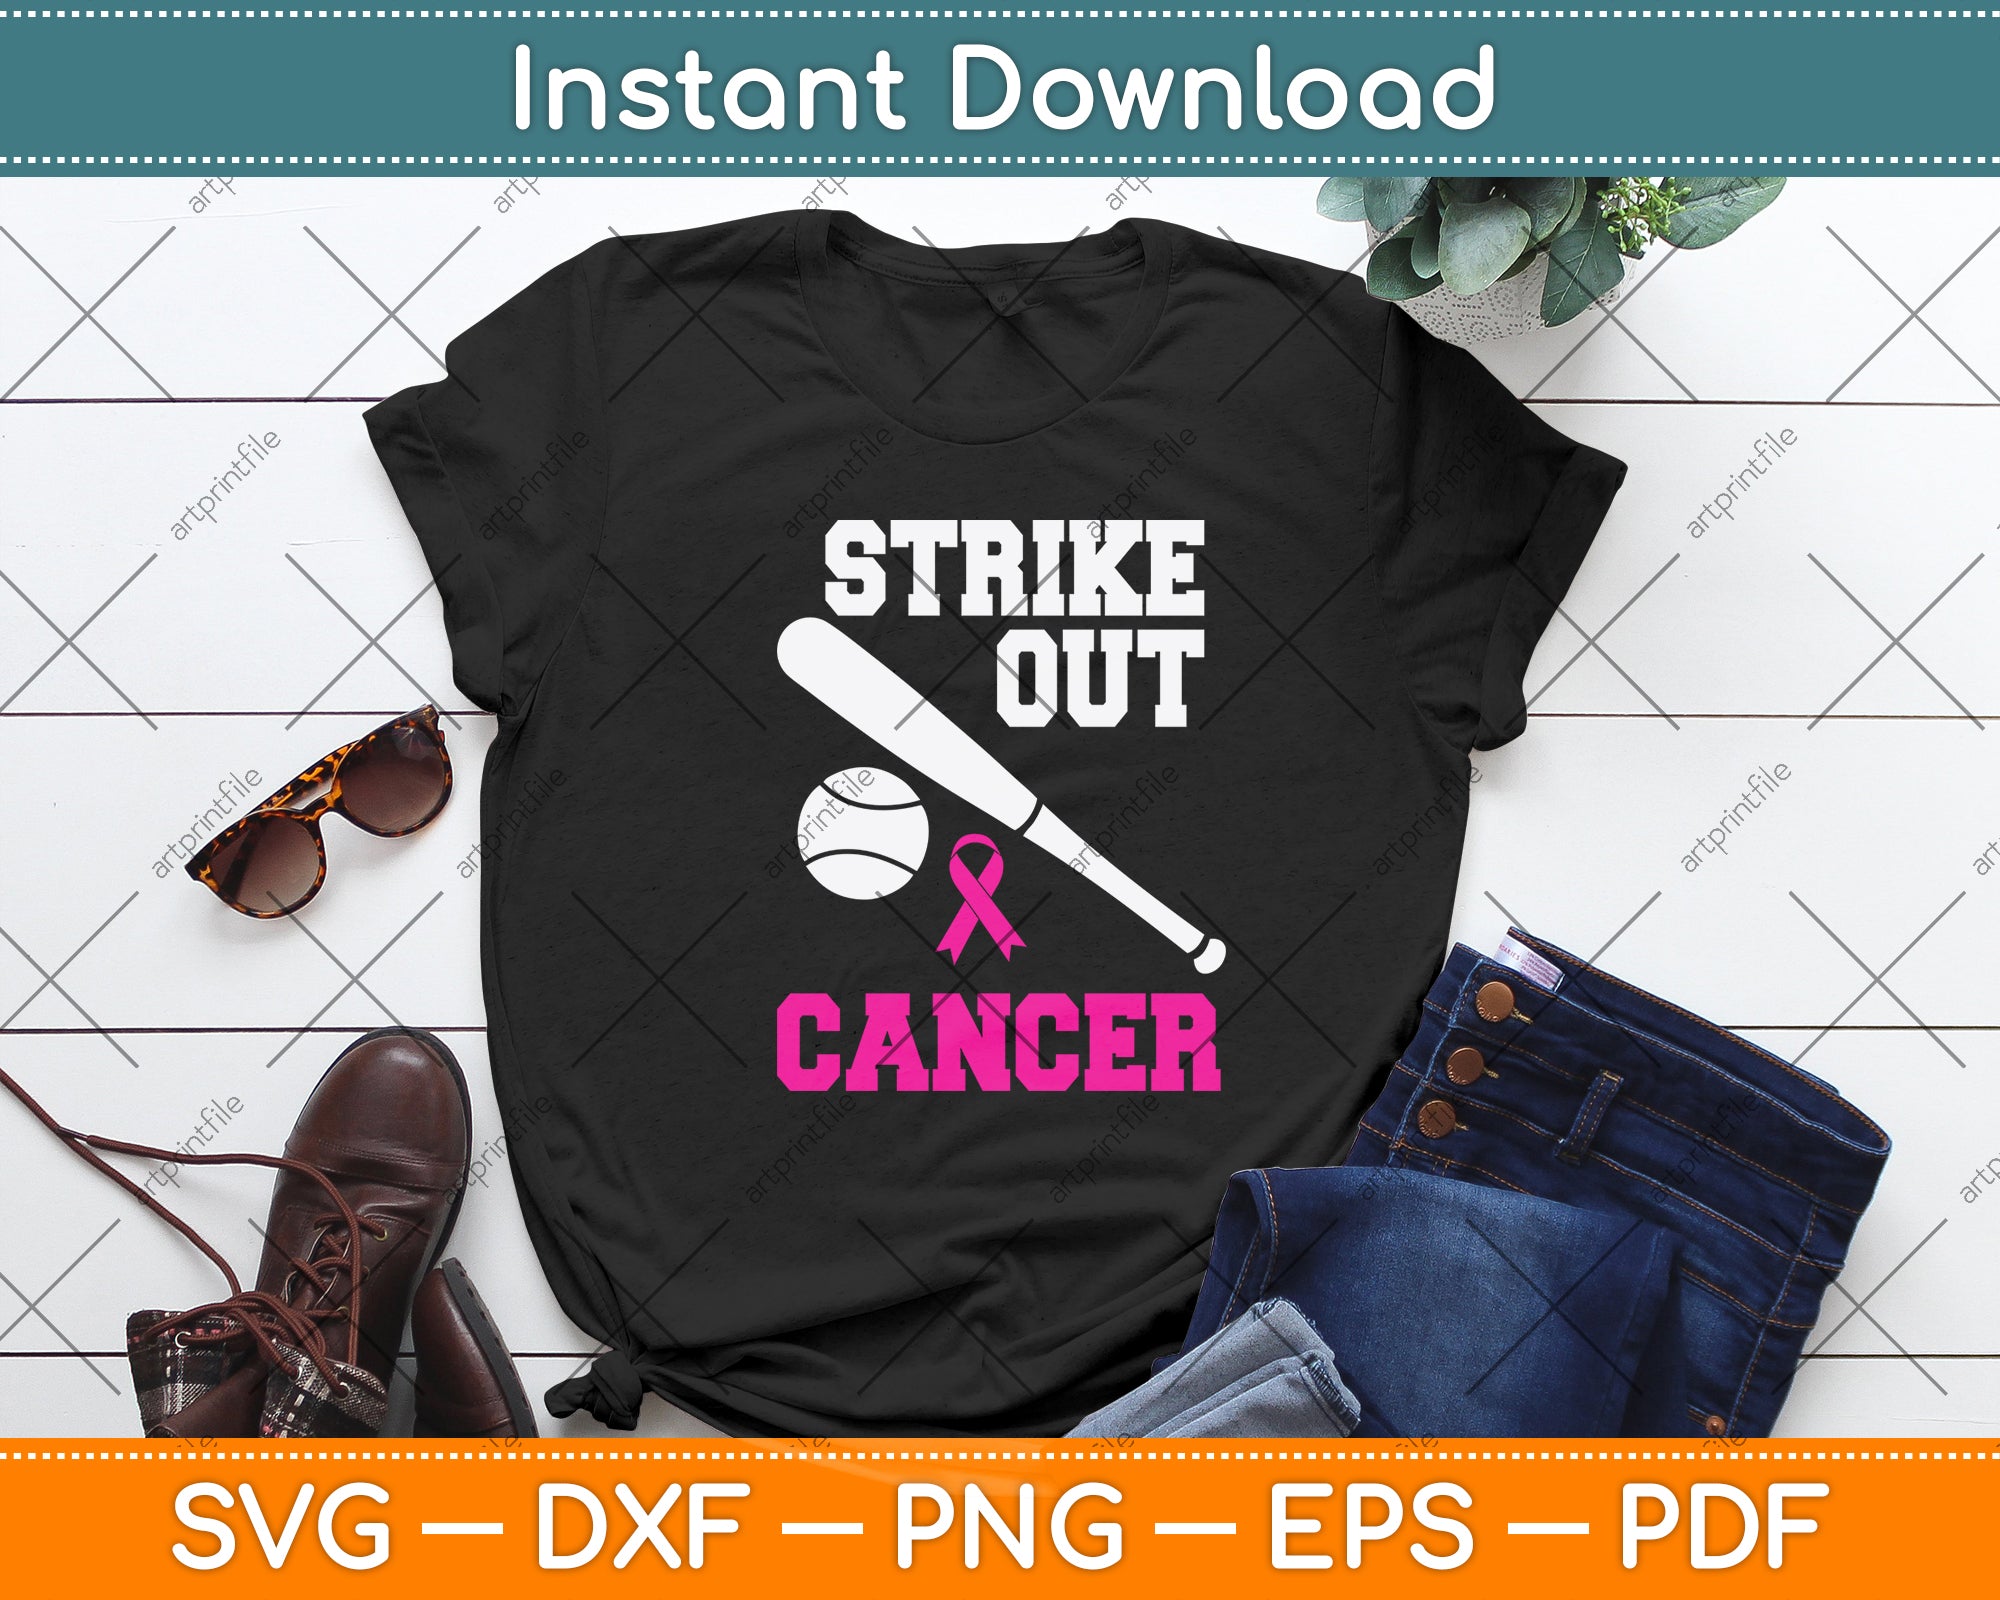 Strike out cancer svg